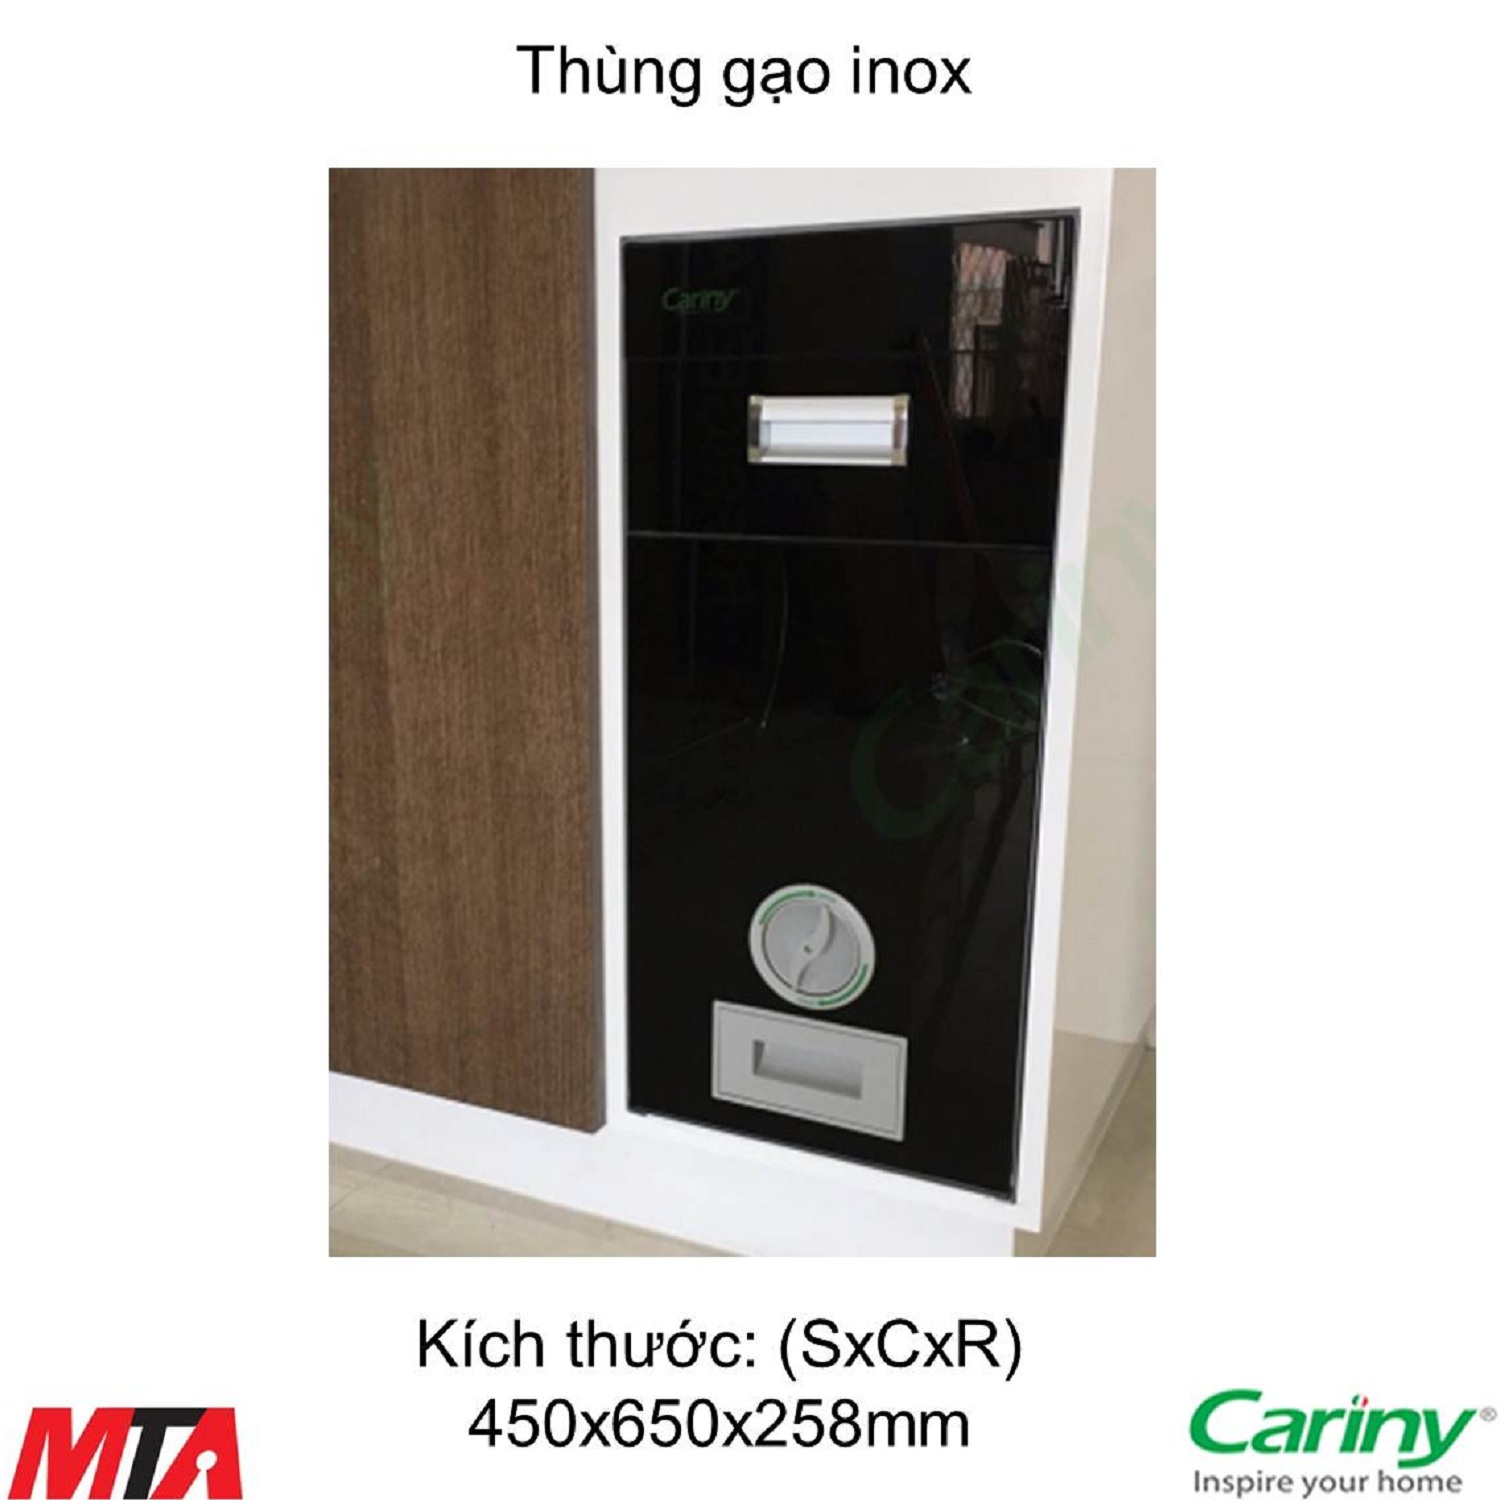 Thung-gao-cariny